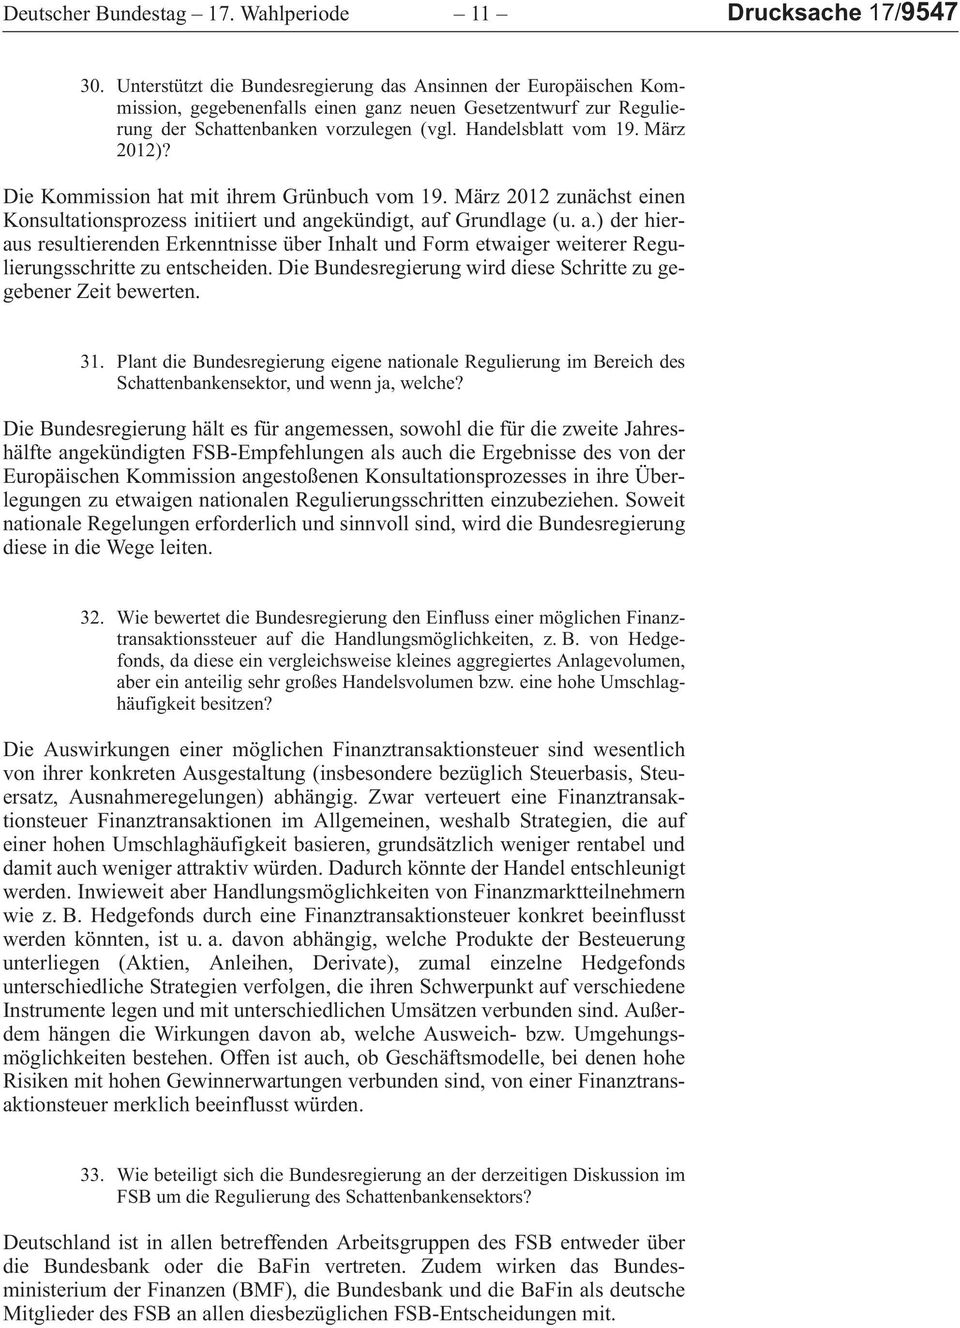 DieKommissionhatmitihremGrünbuchvom19.März2012zunächsteinen Konsultationsprozessinitiiertundangekündigt,aufGrundlage (u.a.)derhierausresultierendenerkenntnisseüberinhaltundformetwaigerweitererregulierungsschrittezuentscheiden.